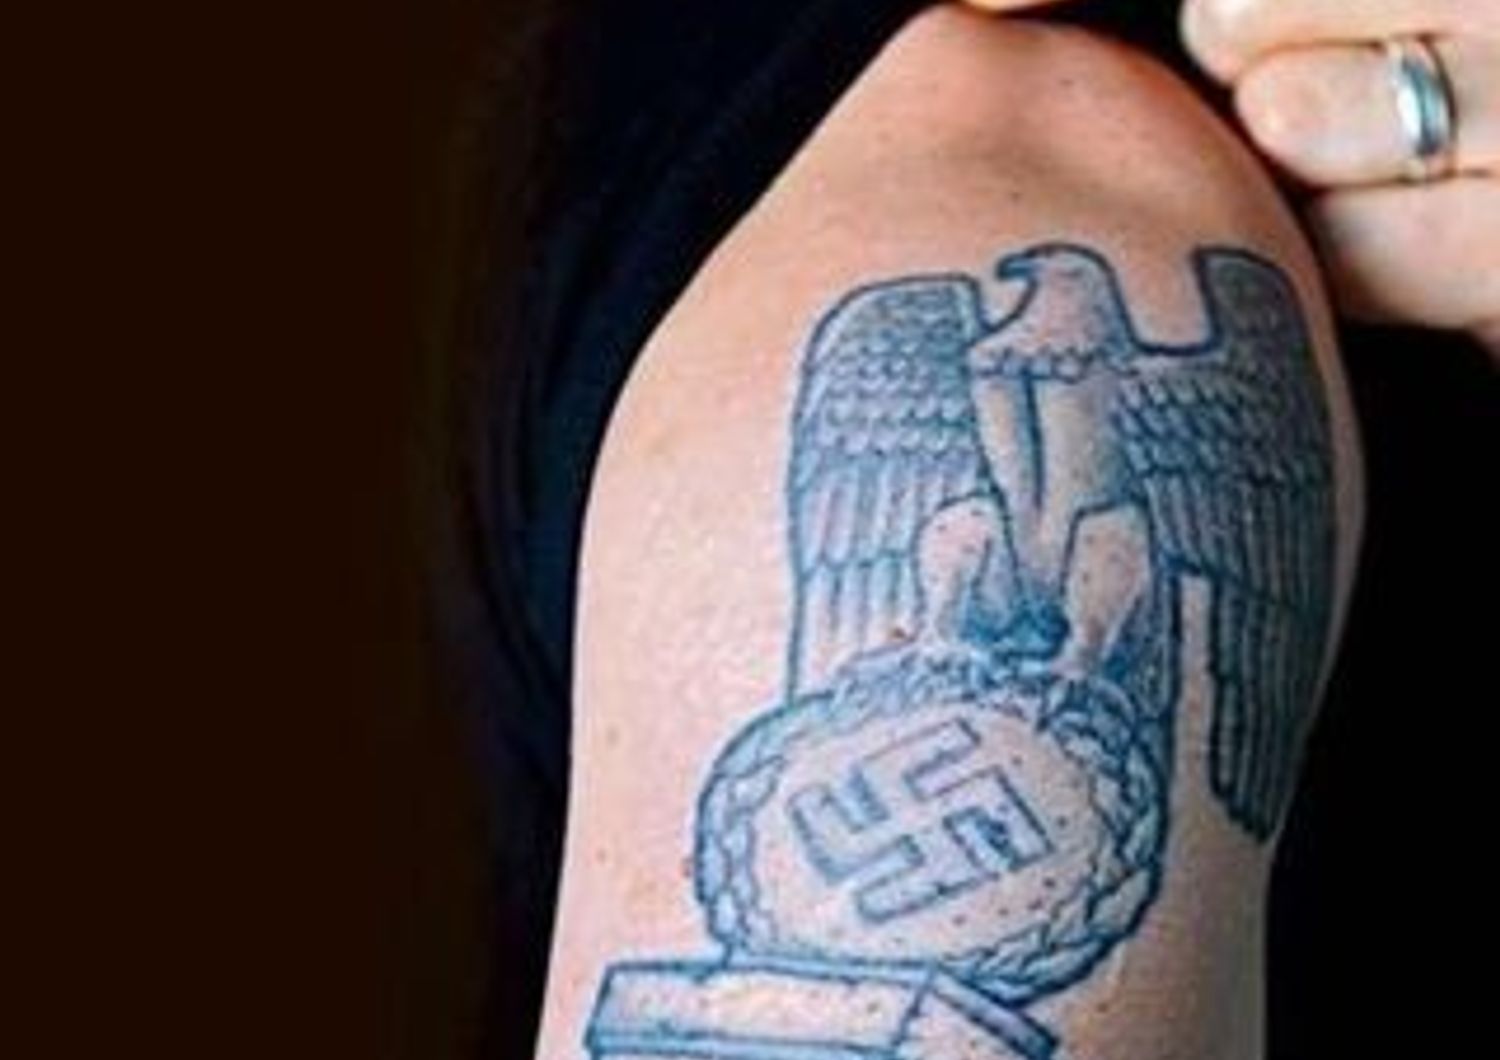 GERMANIA: HA UN TATUAGGIO NAZISTA, CHIRURGO EBREO NON LO OPERA